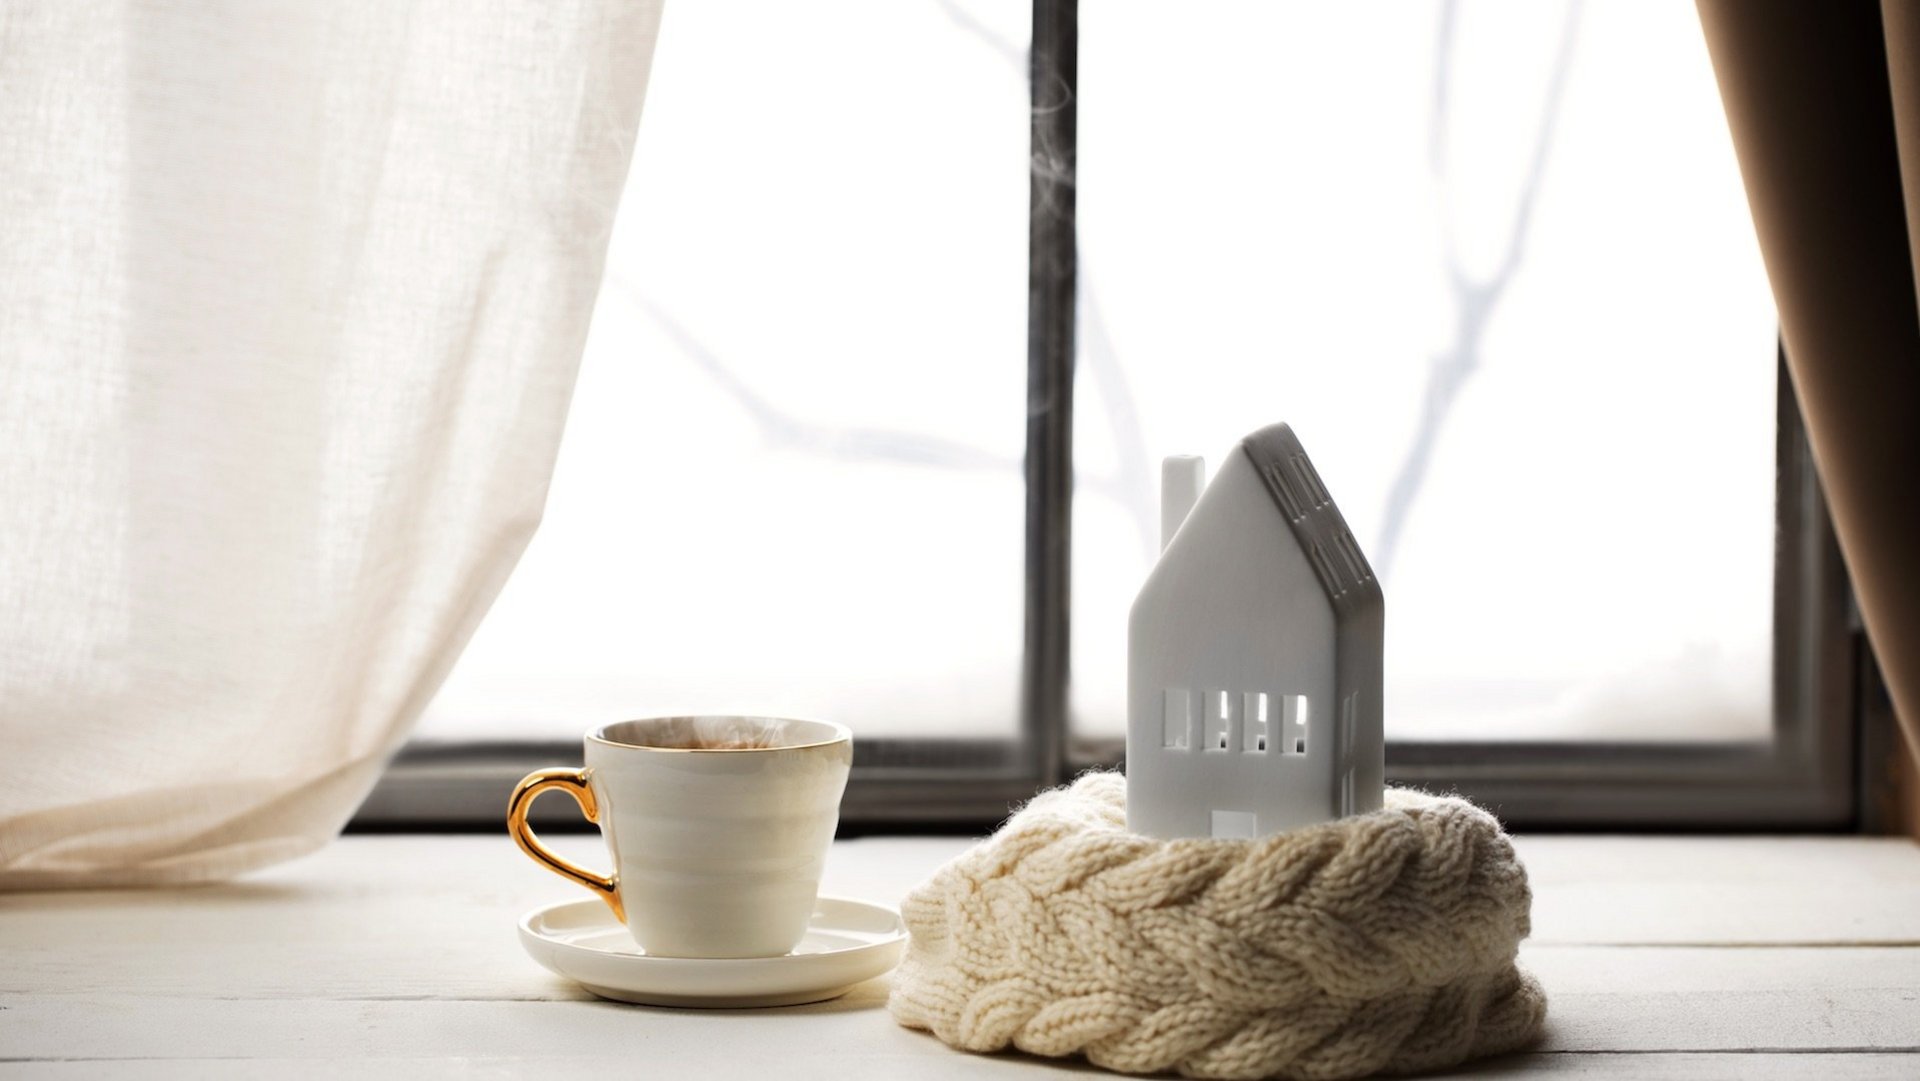 Das Foto zeigt eine dampfende Teetasse und ein Keramik-Haus vor einem Fenster.